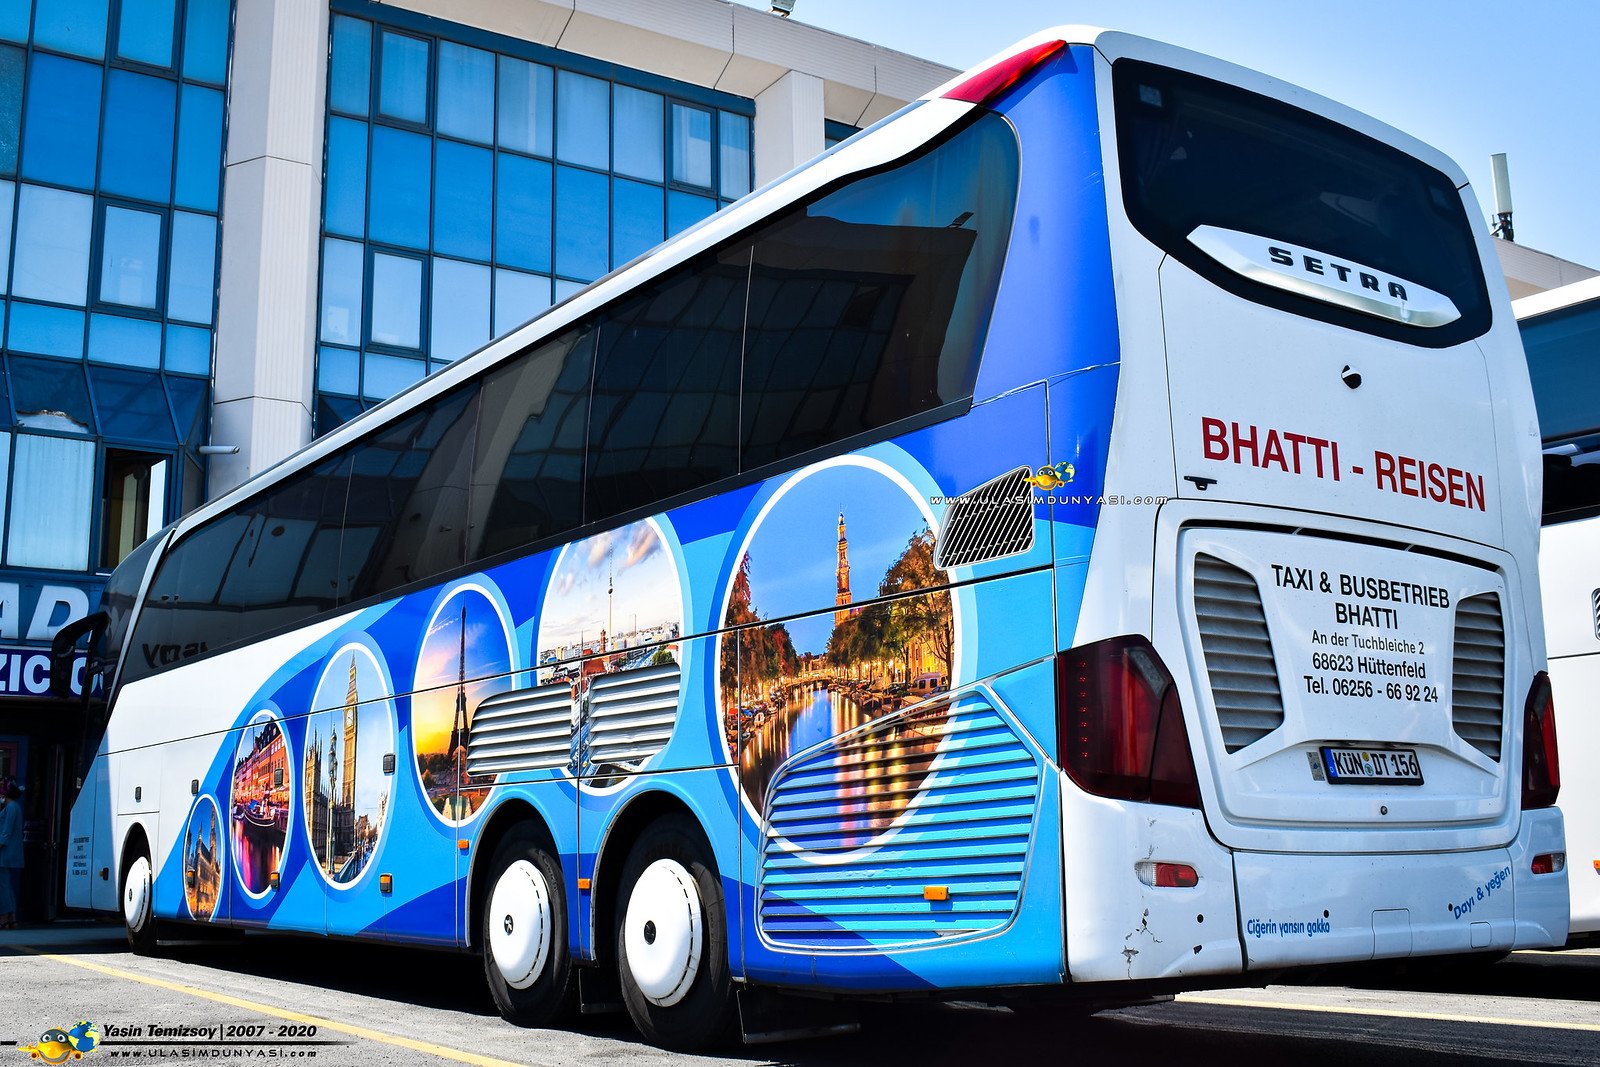 Спутник автобусные туры. Туристический автобус сетра. Setra 517 HDH 2020. Туристический автобус сетра 517. Двухэтажный автобус сетра.